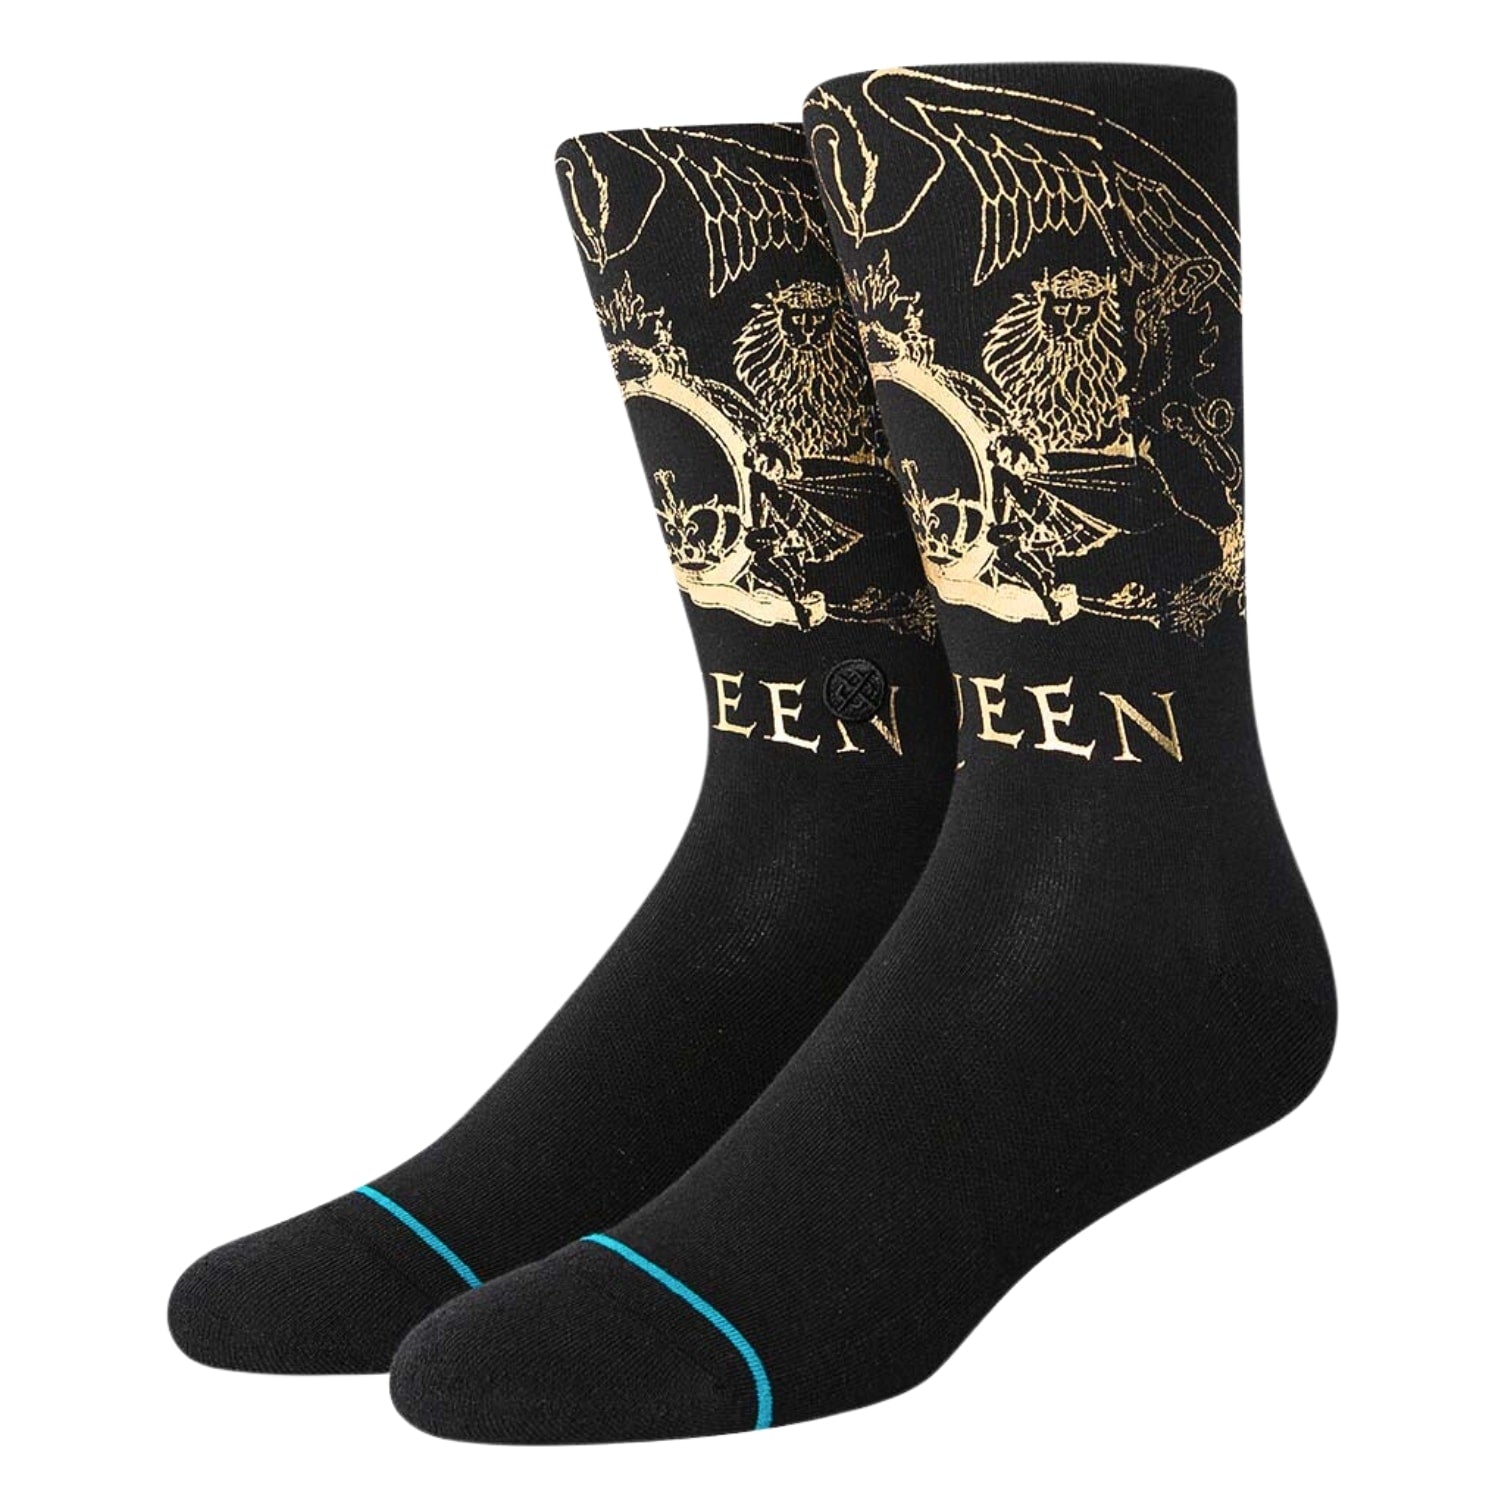 Stance X Queen Golden Socks - Black - Unisex Crew Length Socks by Stance